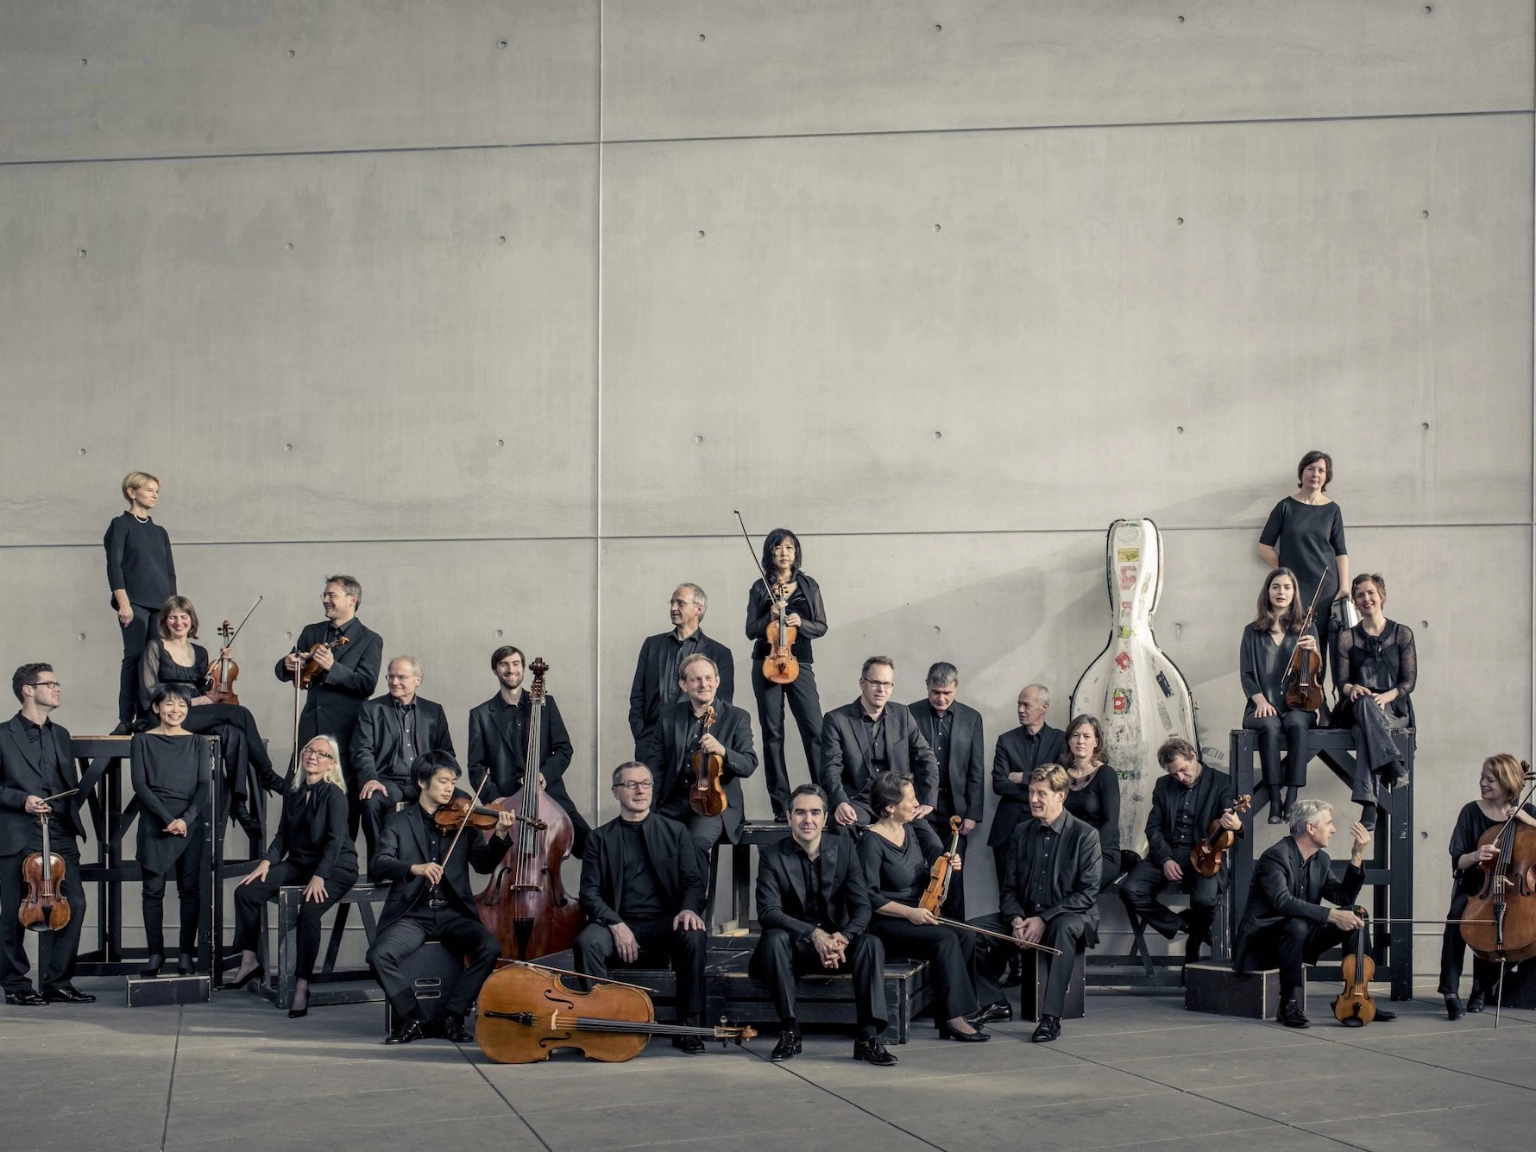 Das Münchener Kammerorchester vor einer grauen Betonwand. Sie posieren zusammen mit ihren Instrumenten. Manche schauen in die Kamera, andere unterhalten sich. 